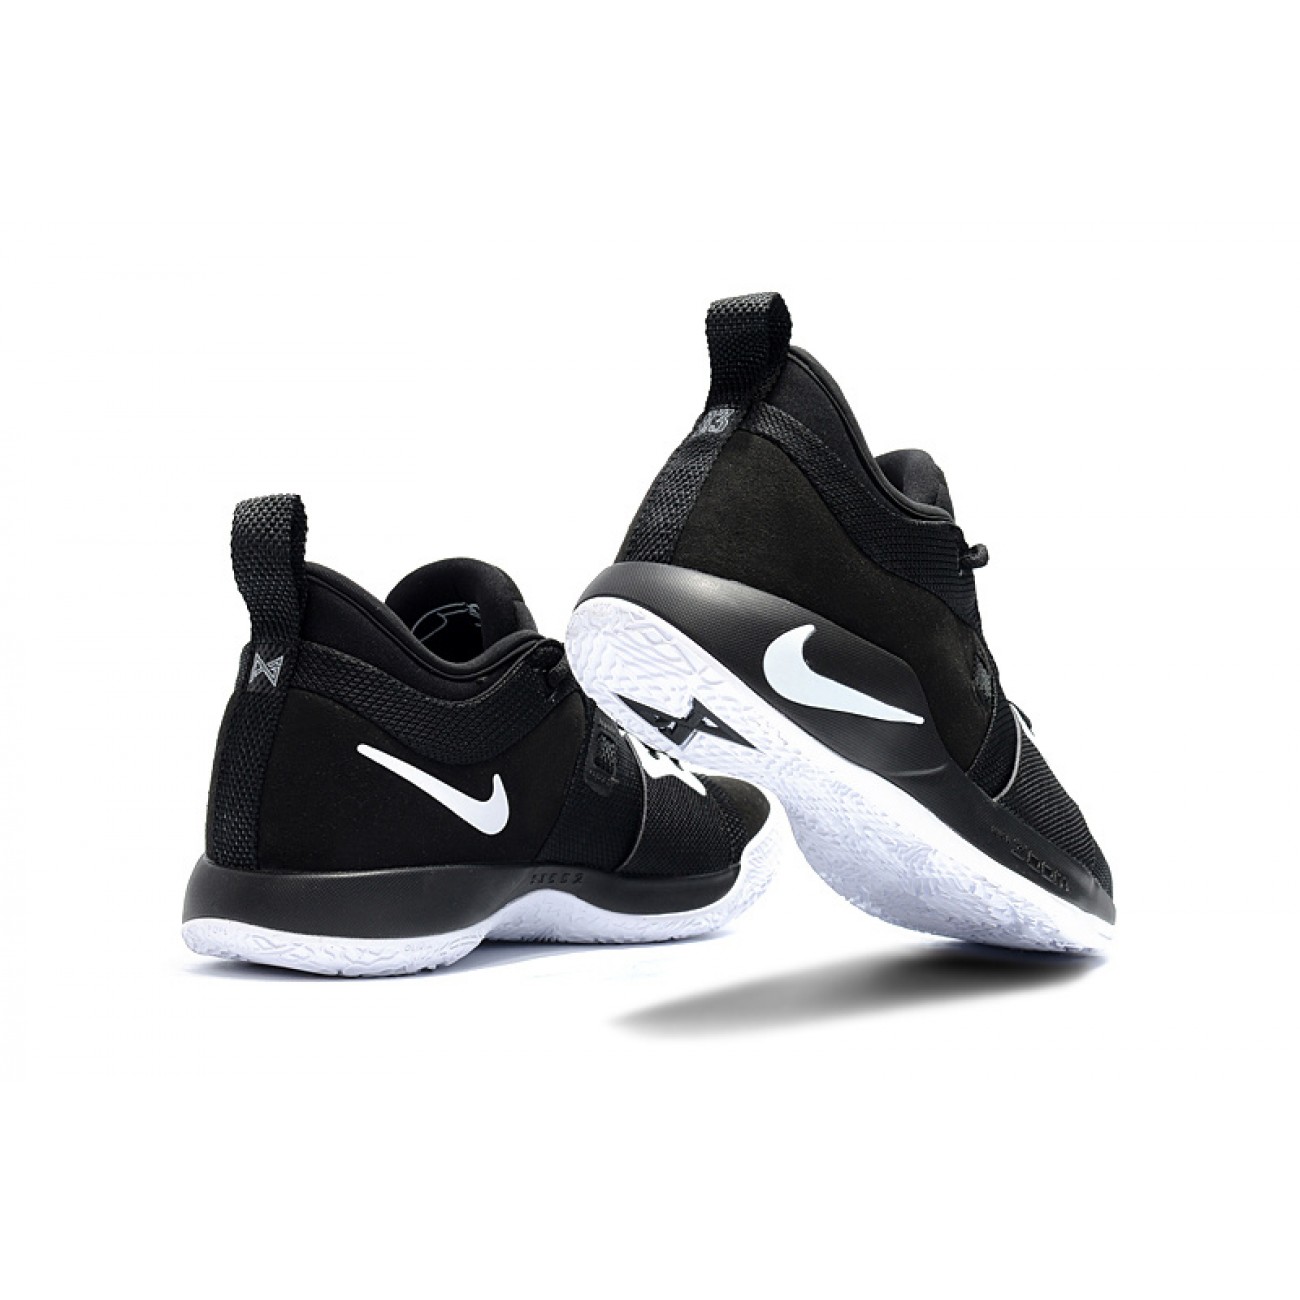 Nike PG 2 Black/White